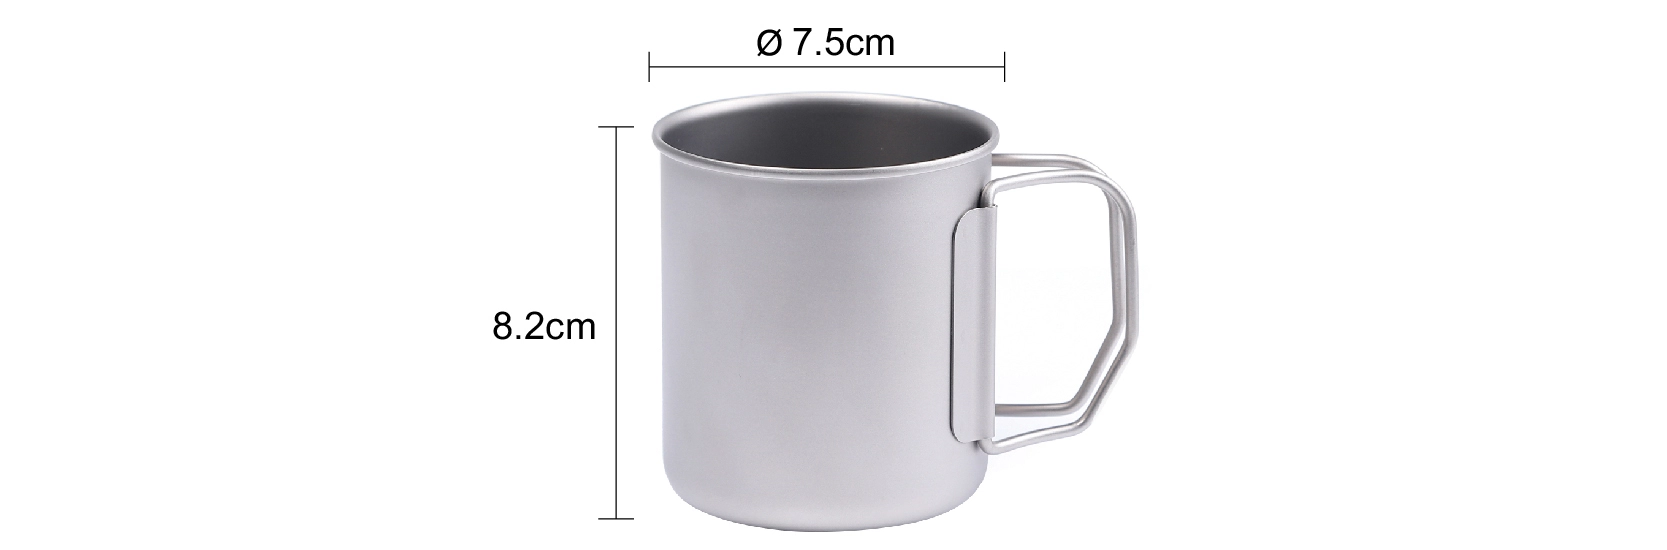 details of Ultralight Durable Titanium Tableware Mug for Trekking